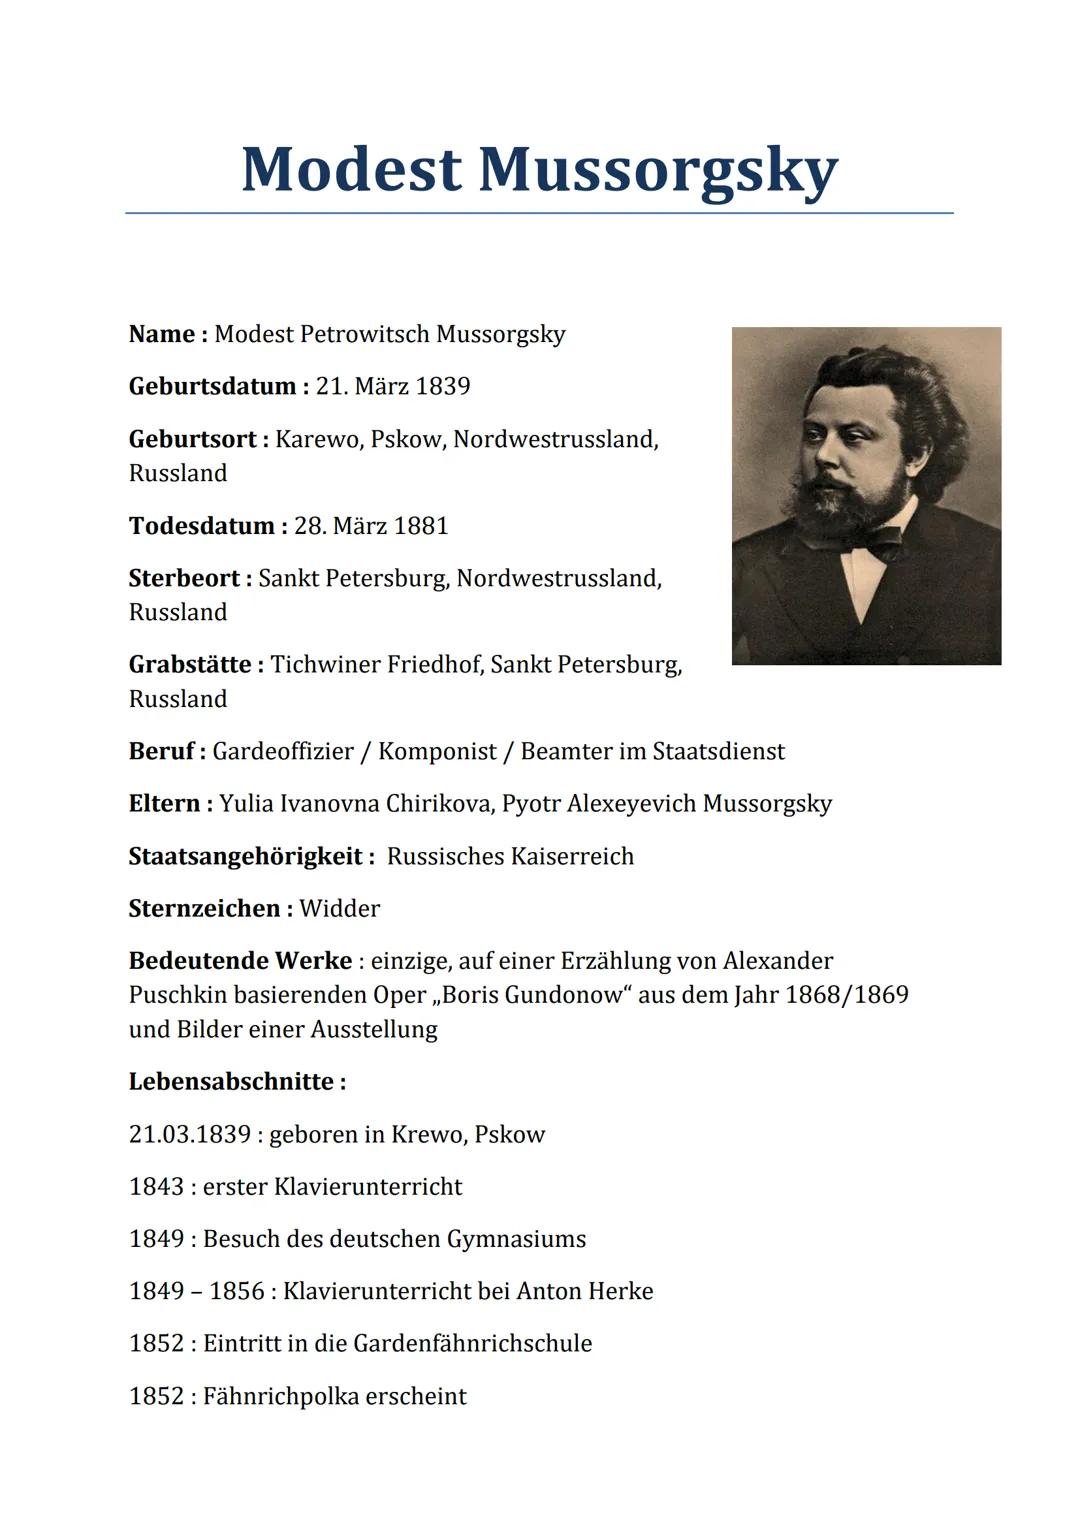 Modest Mussorgsky
Name: Modest Petrowitsch Mussorgsky
Geburtsdatum: 21. März 1839
Geburtsort: Karewo, Pskow, Nordwestrussland,
Russland
Tode